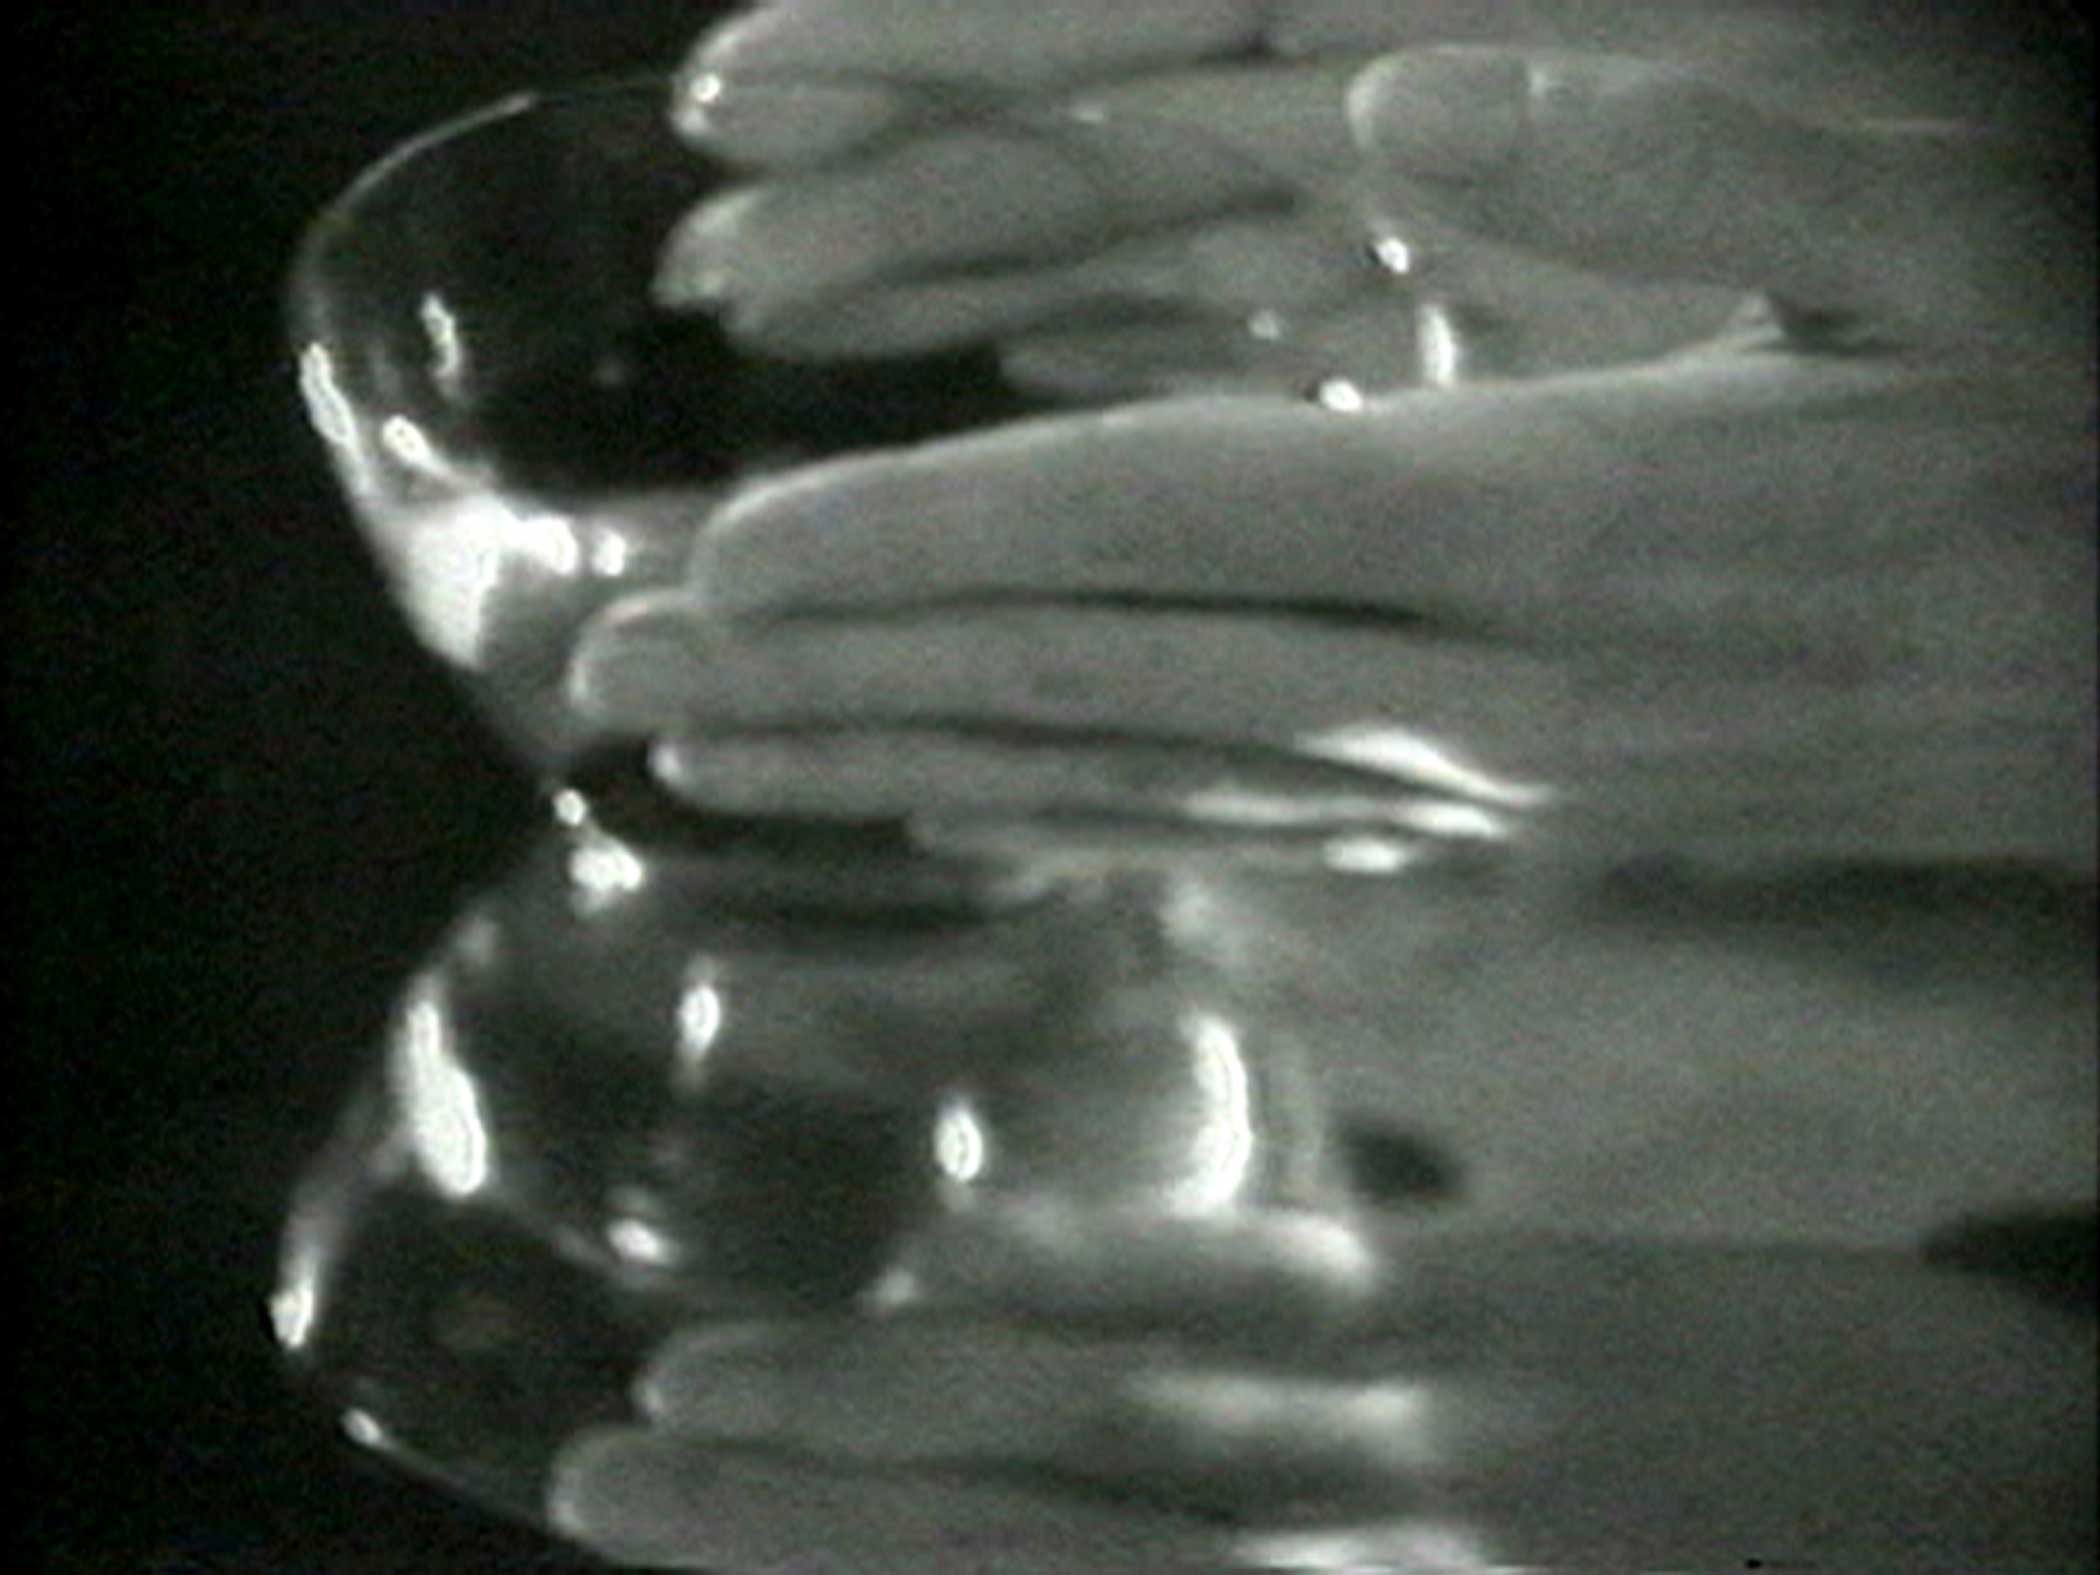 Hands around a glass bowl